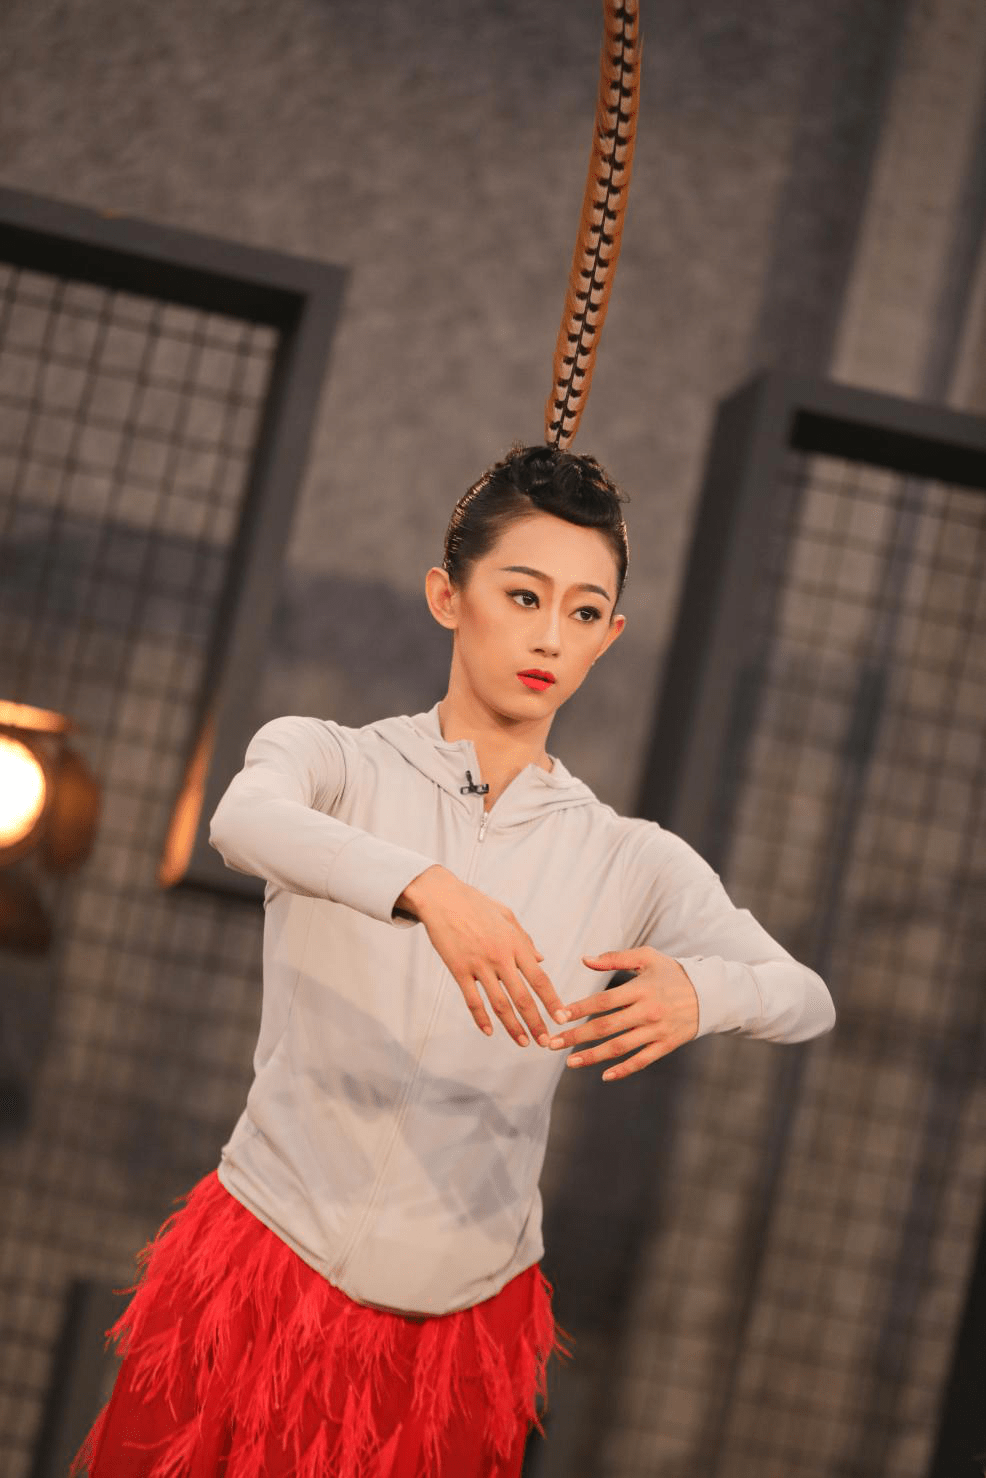 舞蹈风暴第二季本周六晚播出李艳超红裙挑战高难度舞蹈